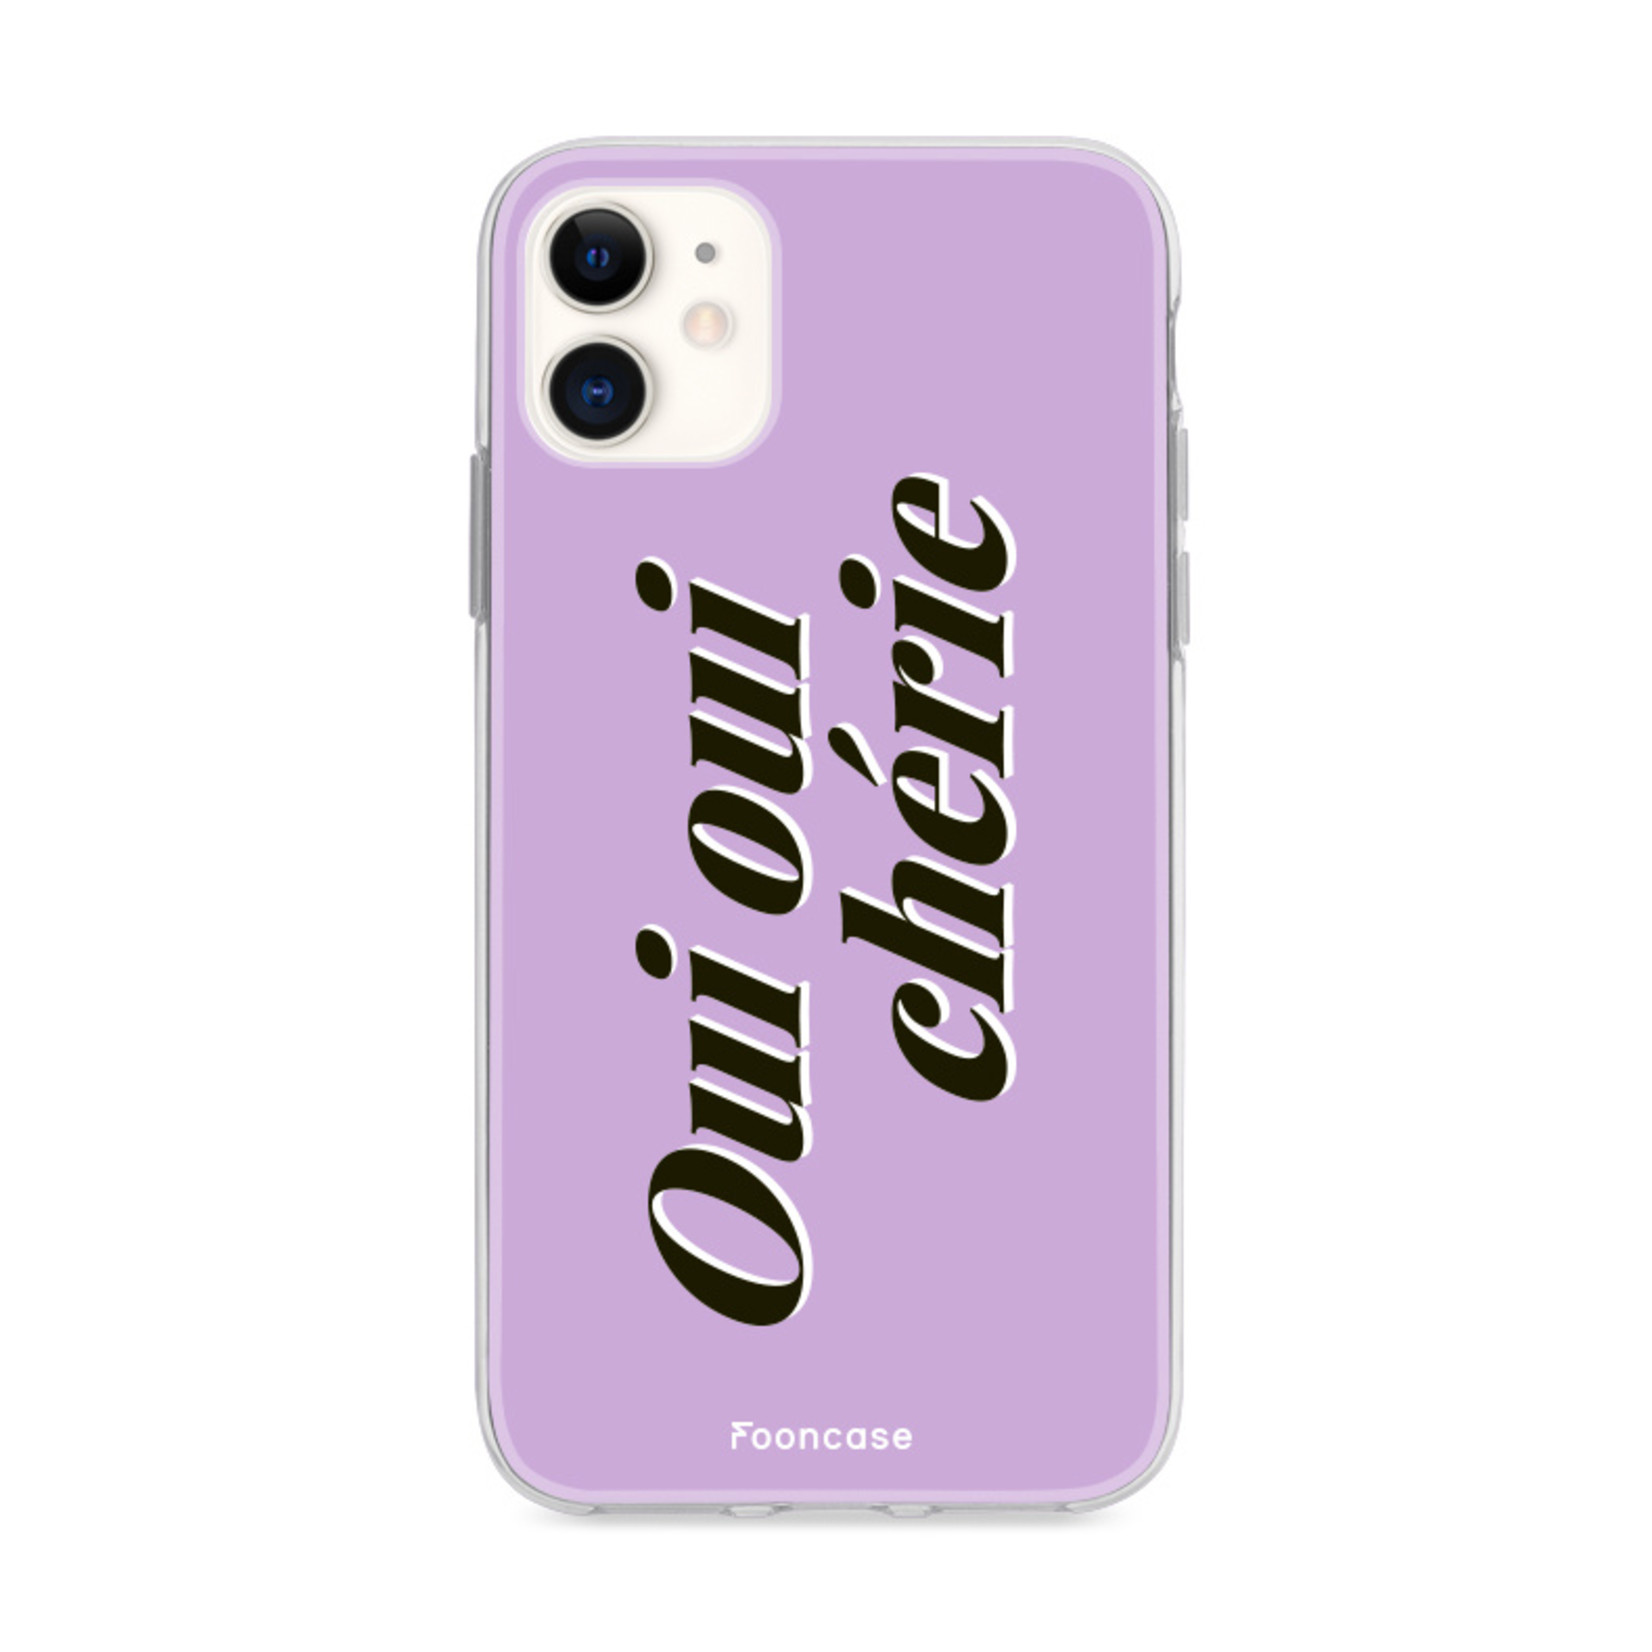 FOONCASE Iphone 11 Cover - Oui Oui Chérie